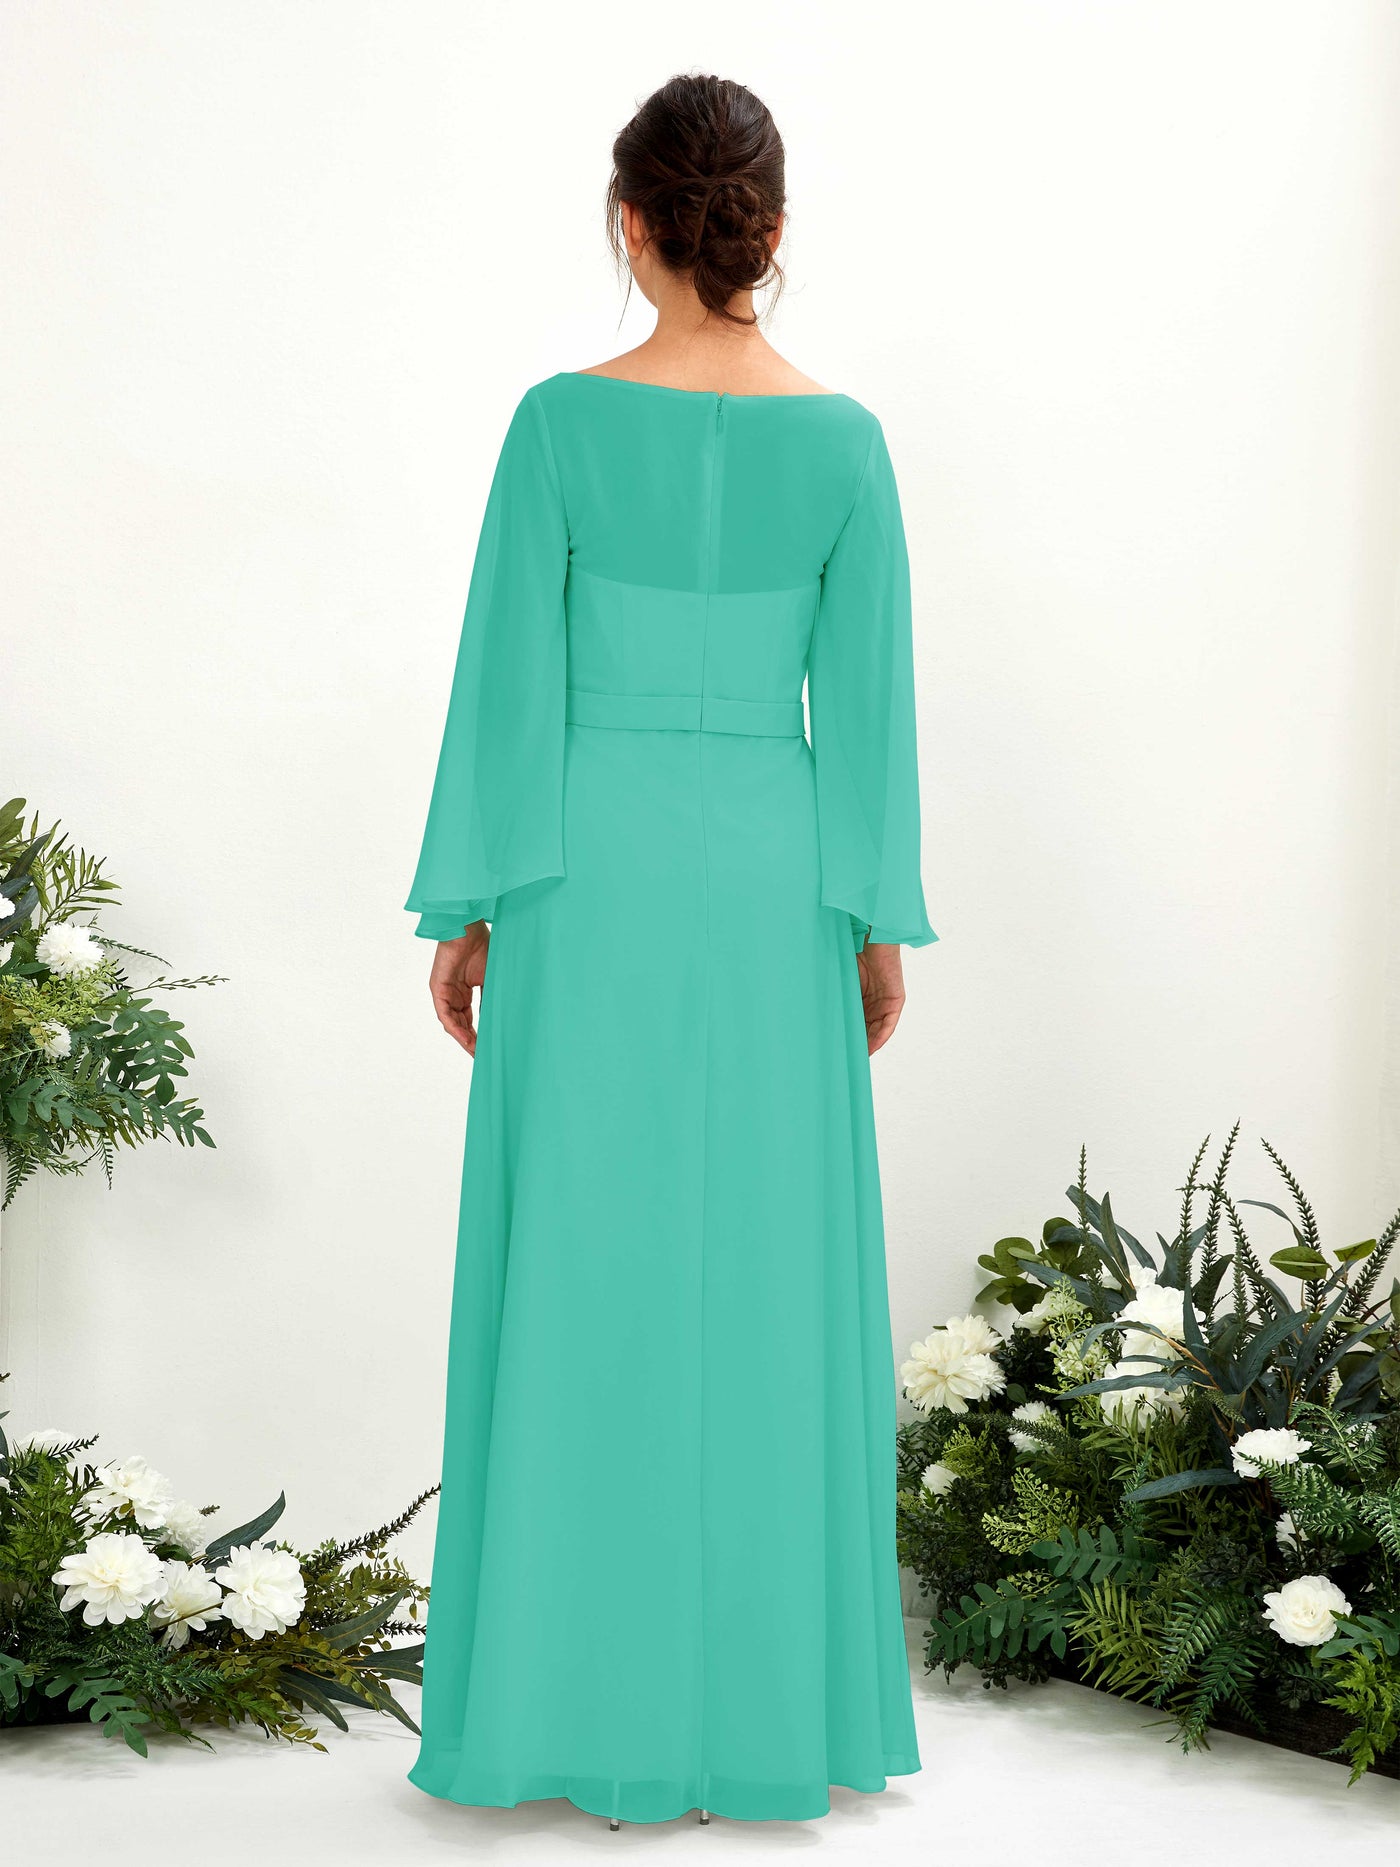 Bateau Illusion Long Sleeves Chiffon Bridesmaid Dress - Tiffany (81220532)#color_tiffany